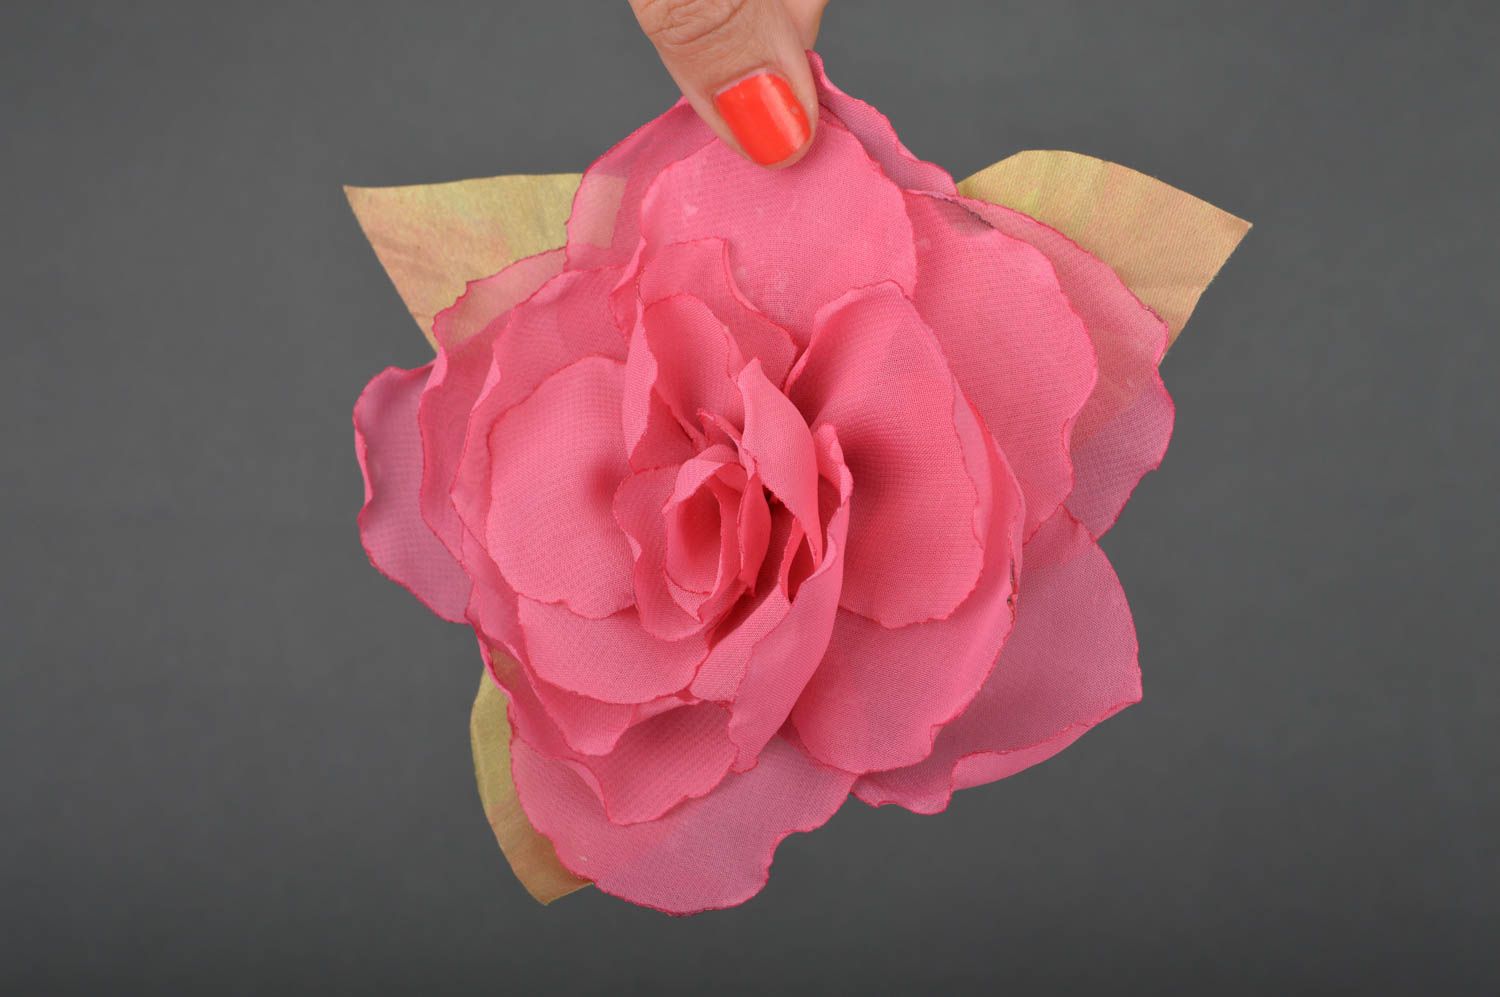 Брошь заколка в виде цветка пиона пышная розовая красивая нарядная ручной работы фото 3